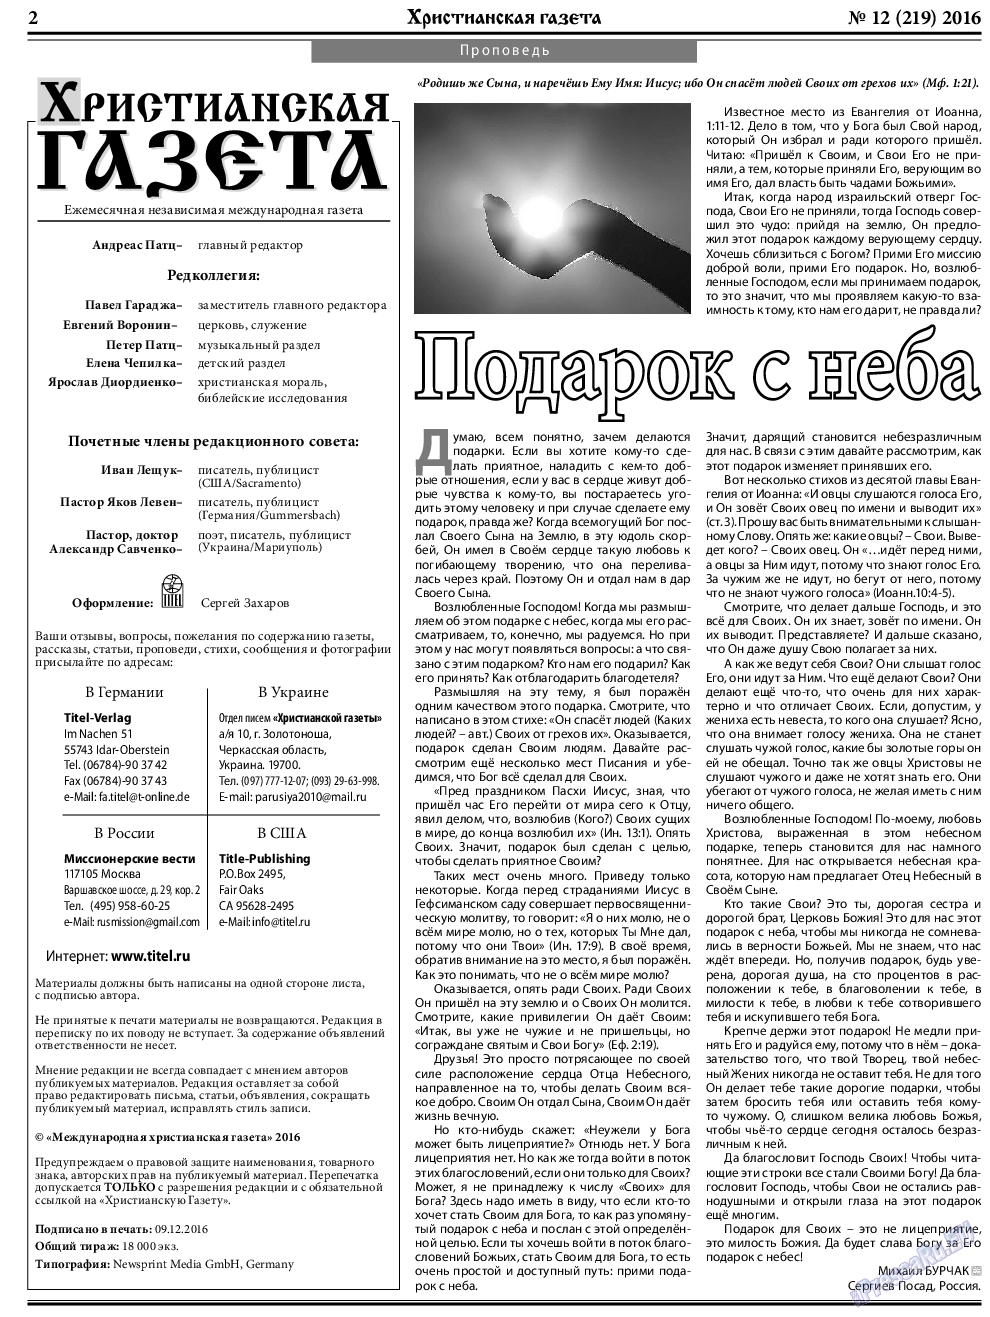 Христианская газета, газета. 2016 №12 стр.2